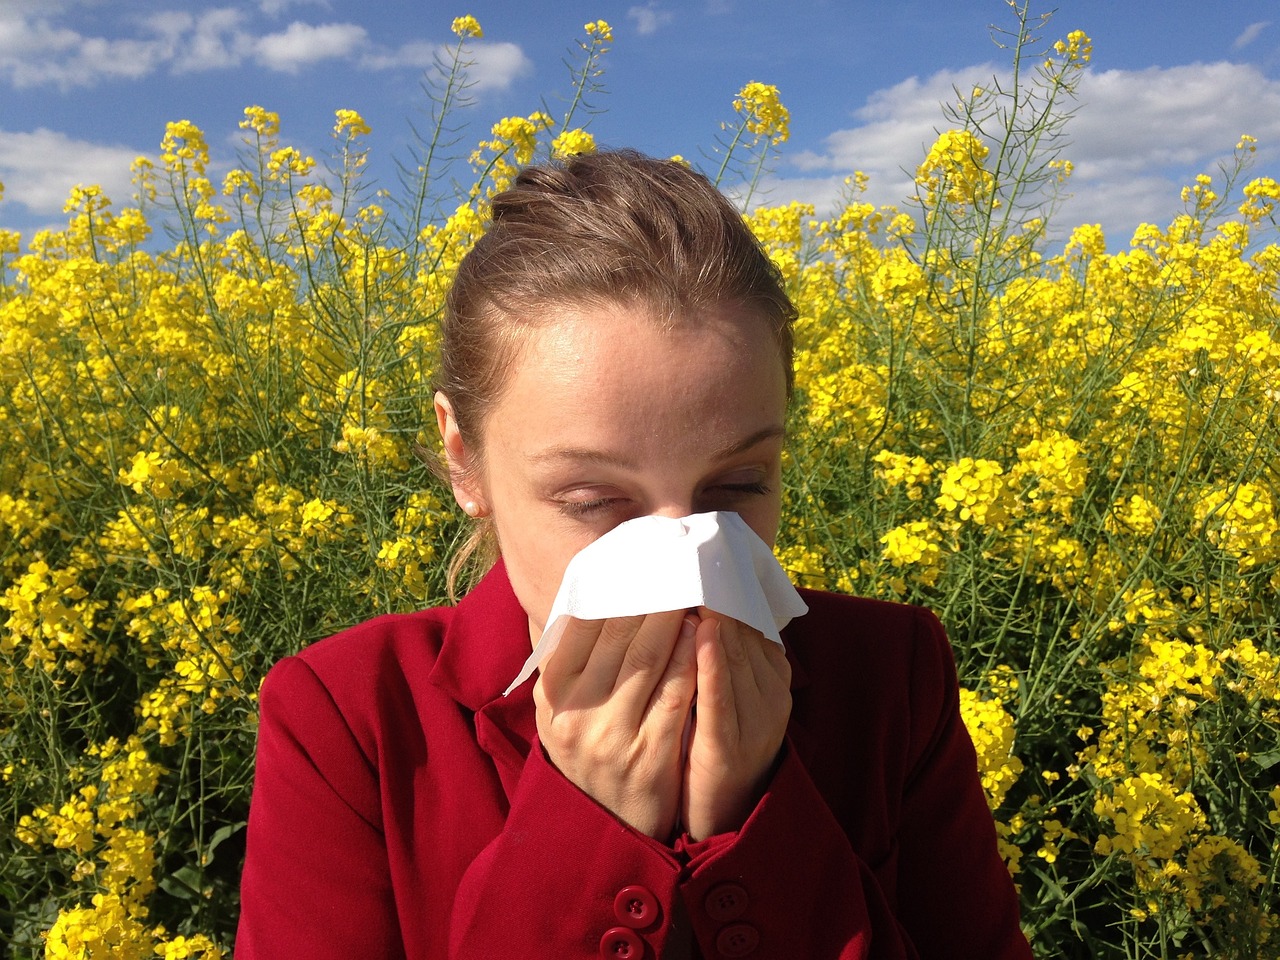 Cvetni prah: Kdaj in kje bo obremenitev za alergike najhujša?